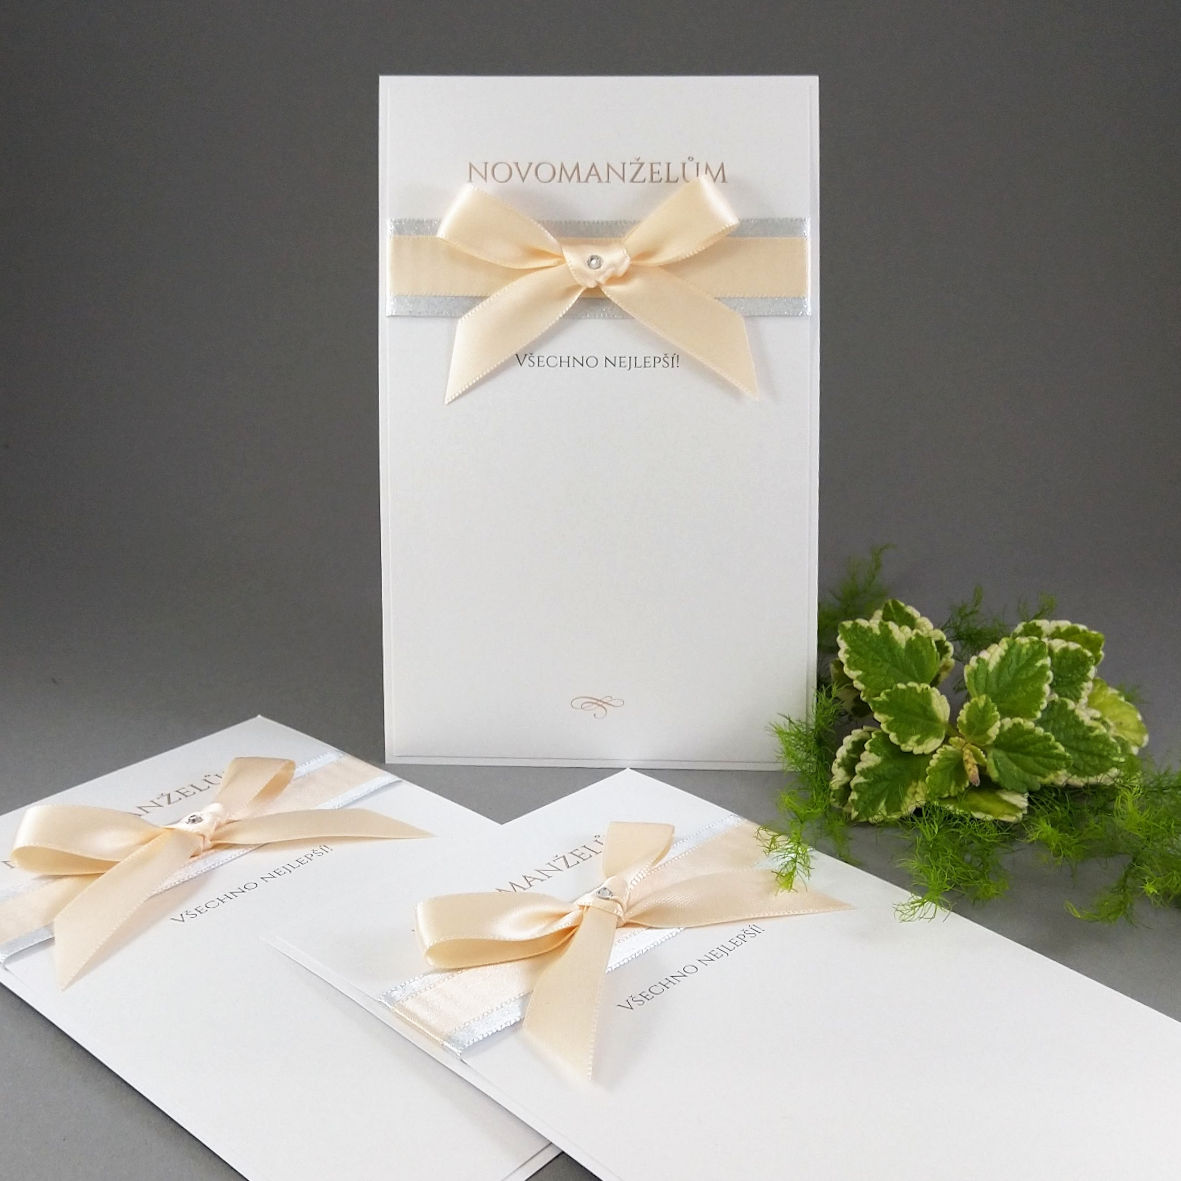 Blahopřání k svatbě – kašírovaná karta s atlasovými stuhami, barva broskvová + stříbrná.